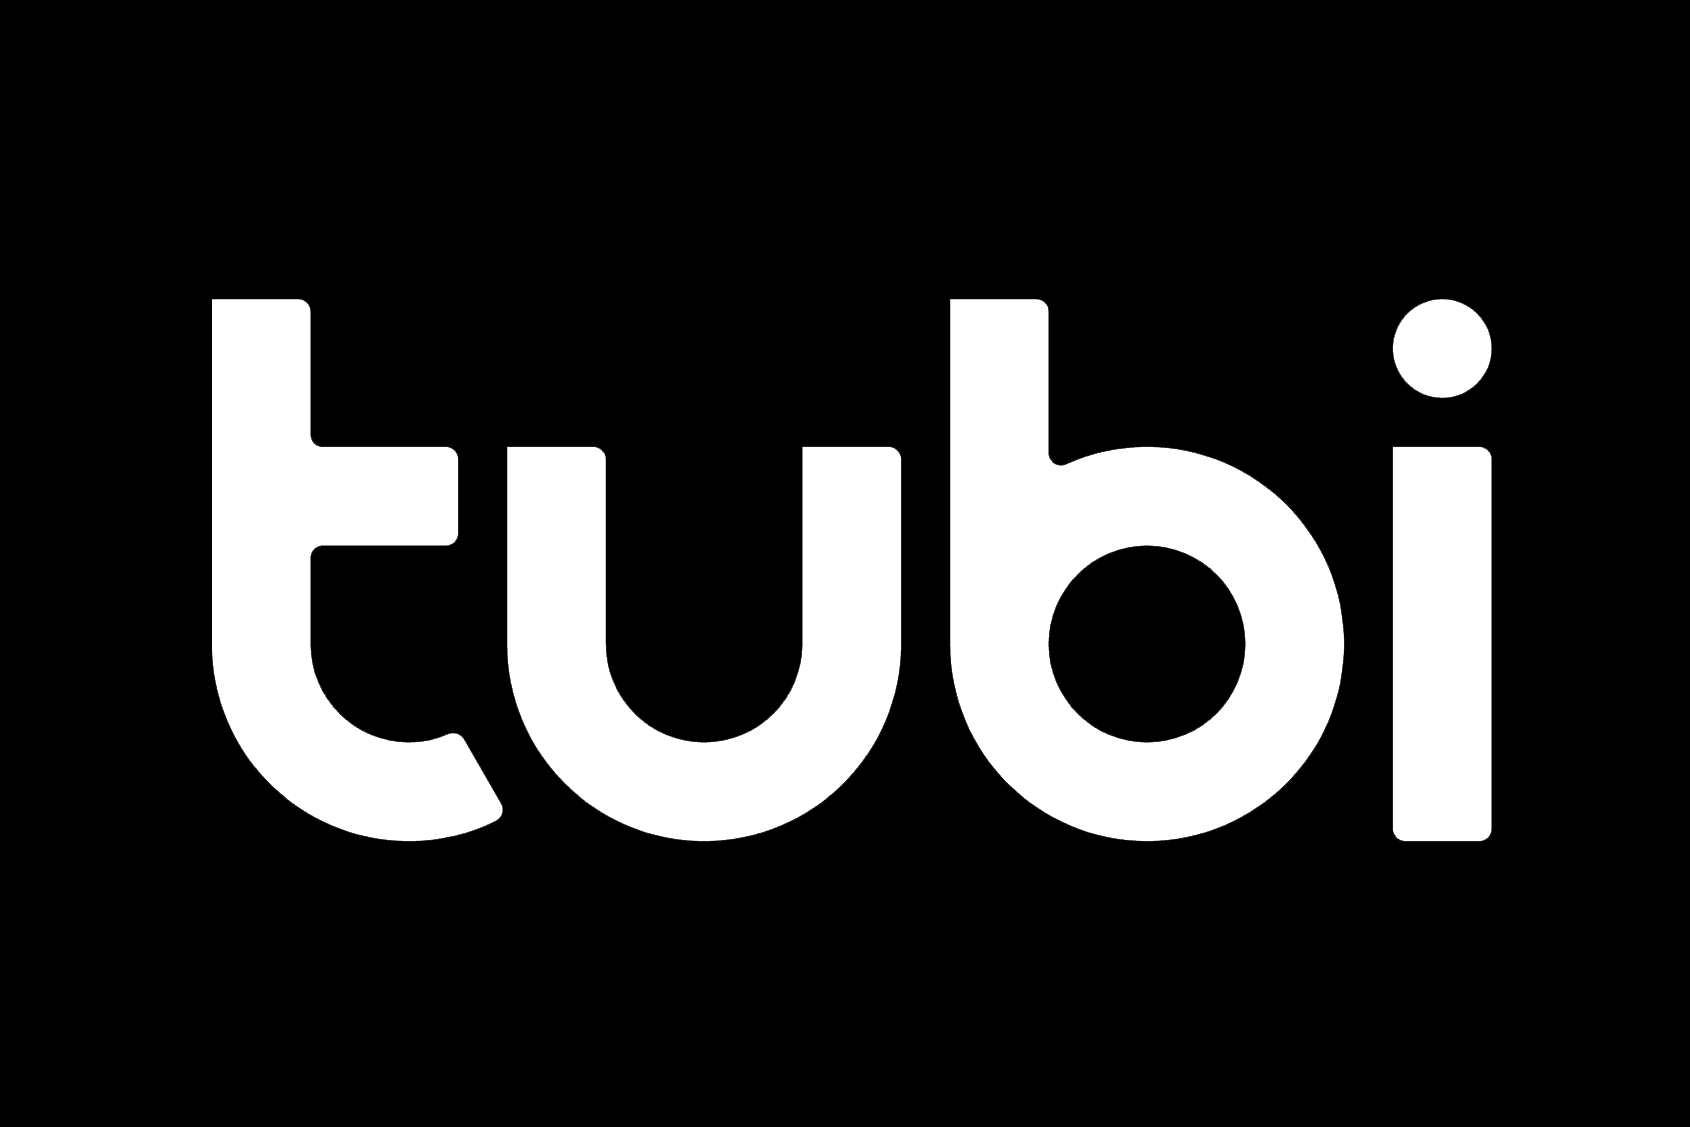 Tubi-logo